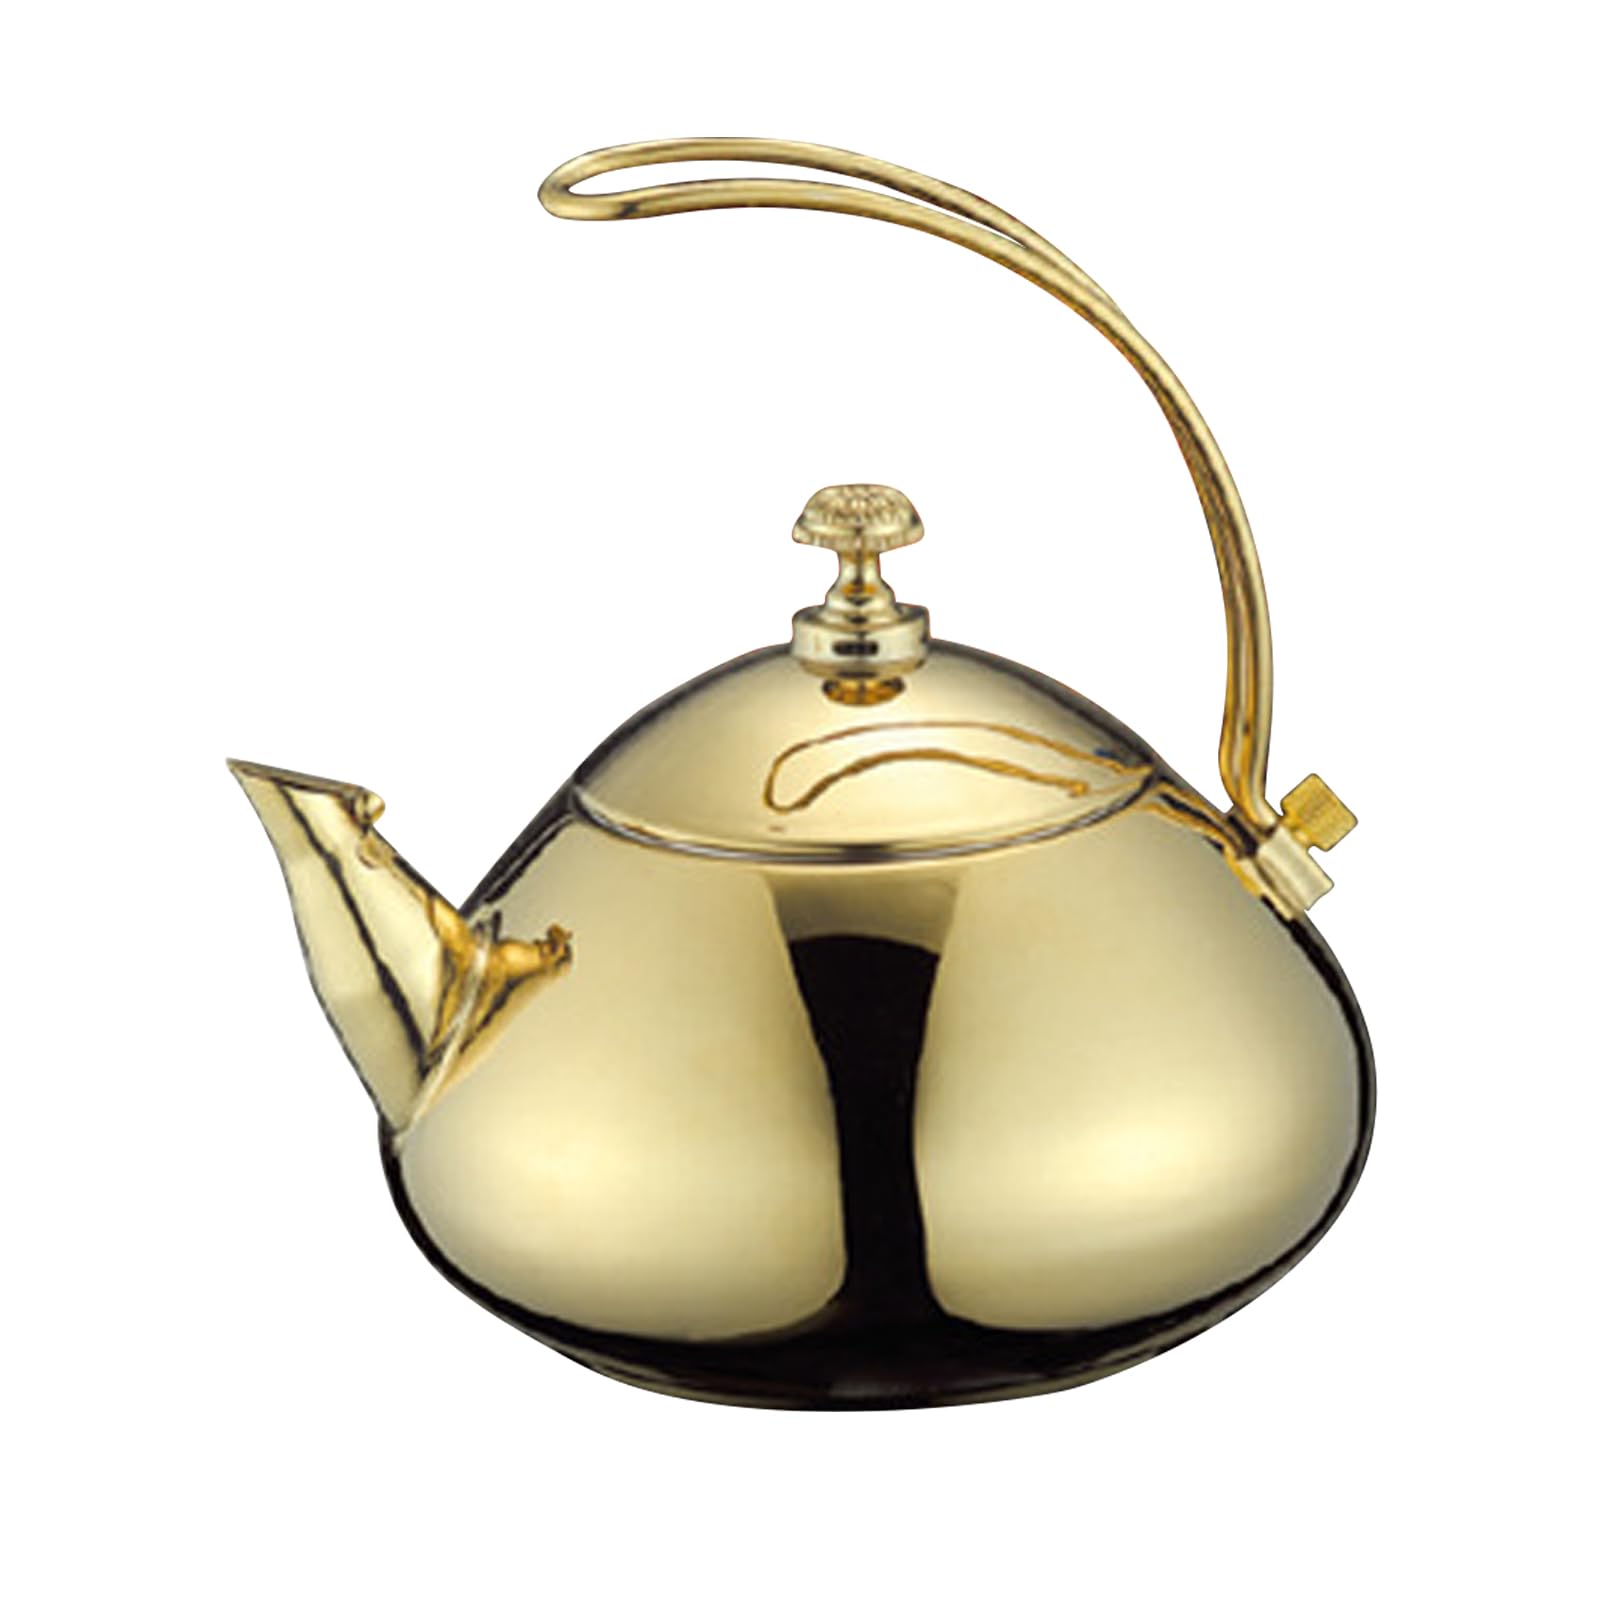 LetCart Edelstahl Teekanne, Klassische 1.5L Teekanne Elektrischer Wasserkocher Kaffeekanne Schnelle Wassererwärmung Kochtopf für alle Duftender Tee und Infusionstee(Golden)